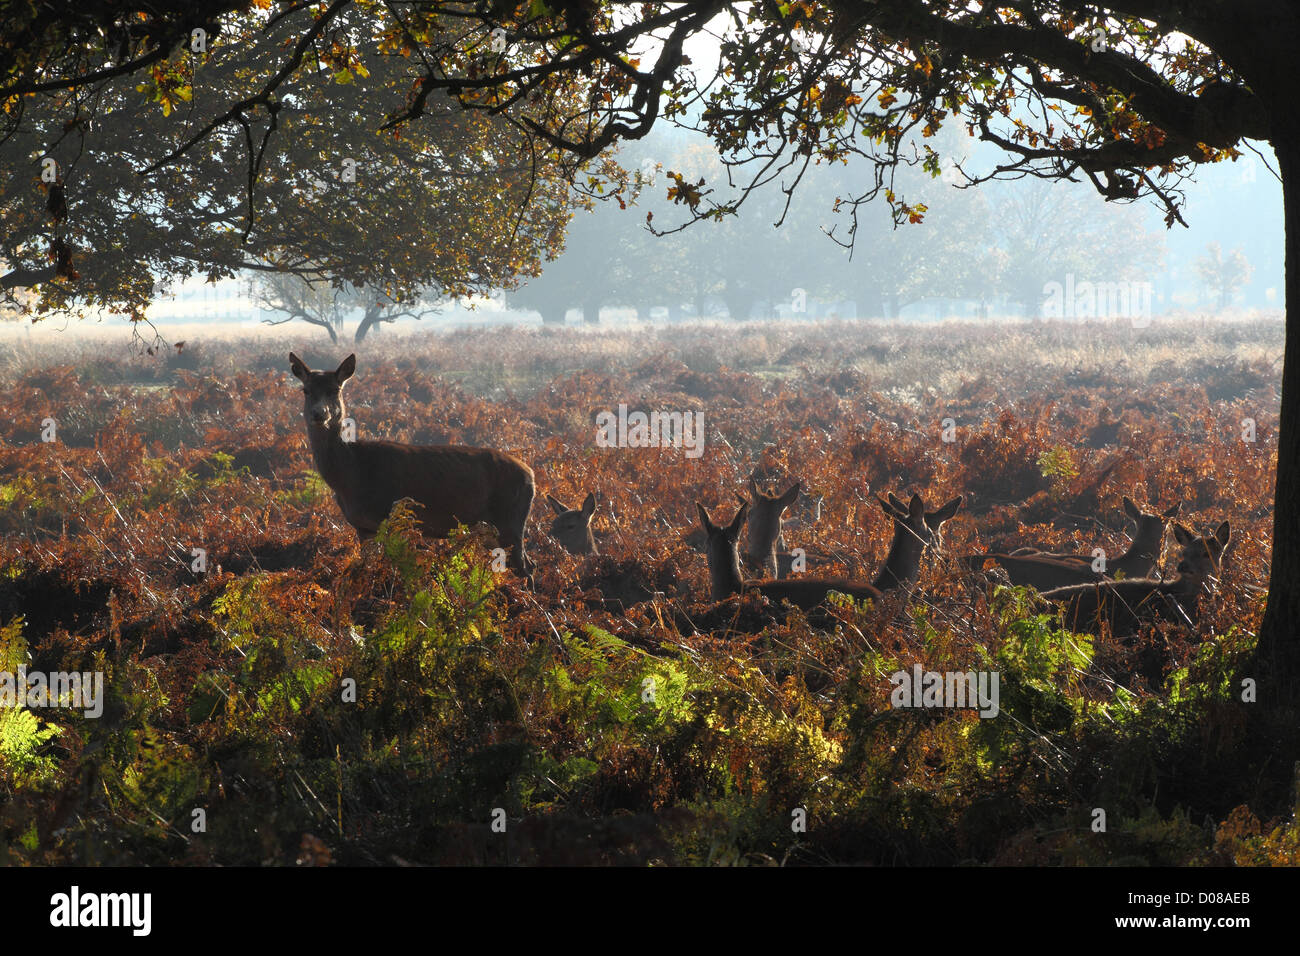 Wild Deer in autumn woodland Stock Photo